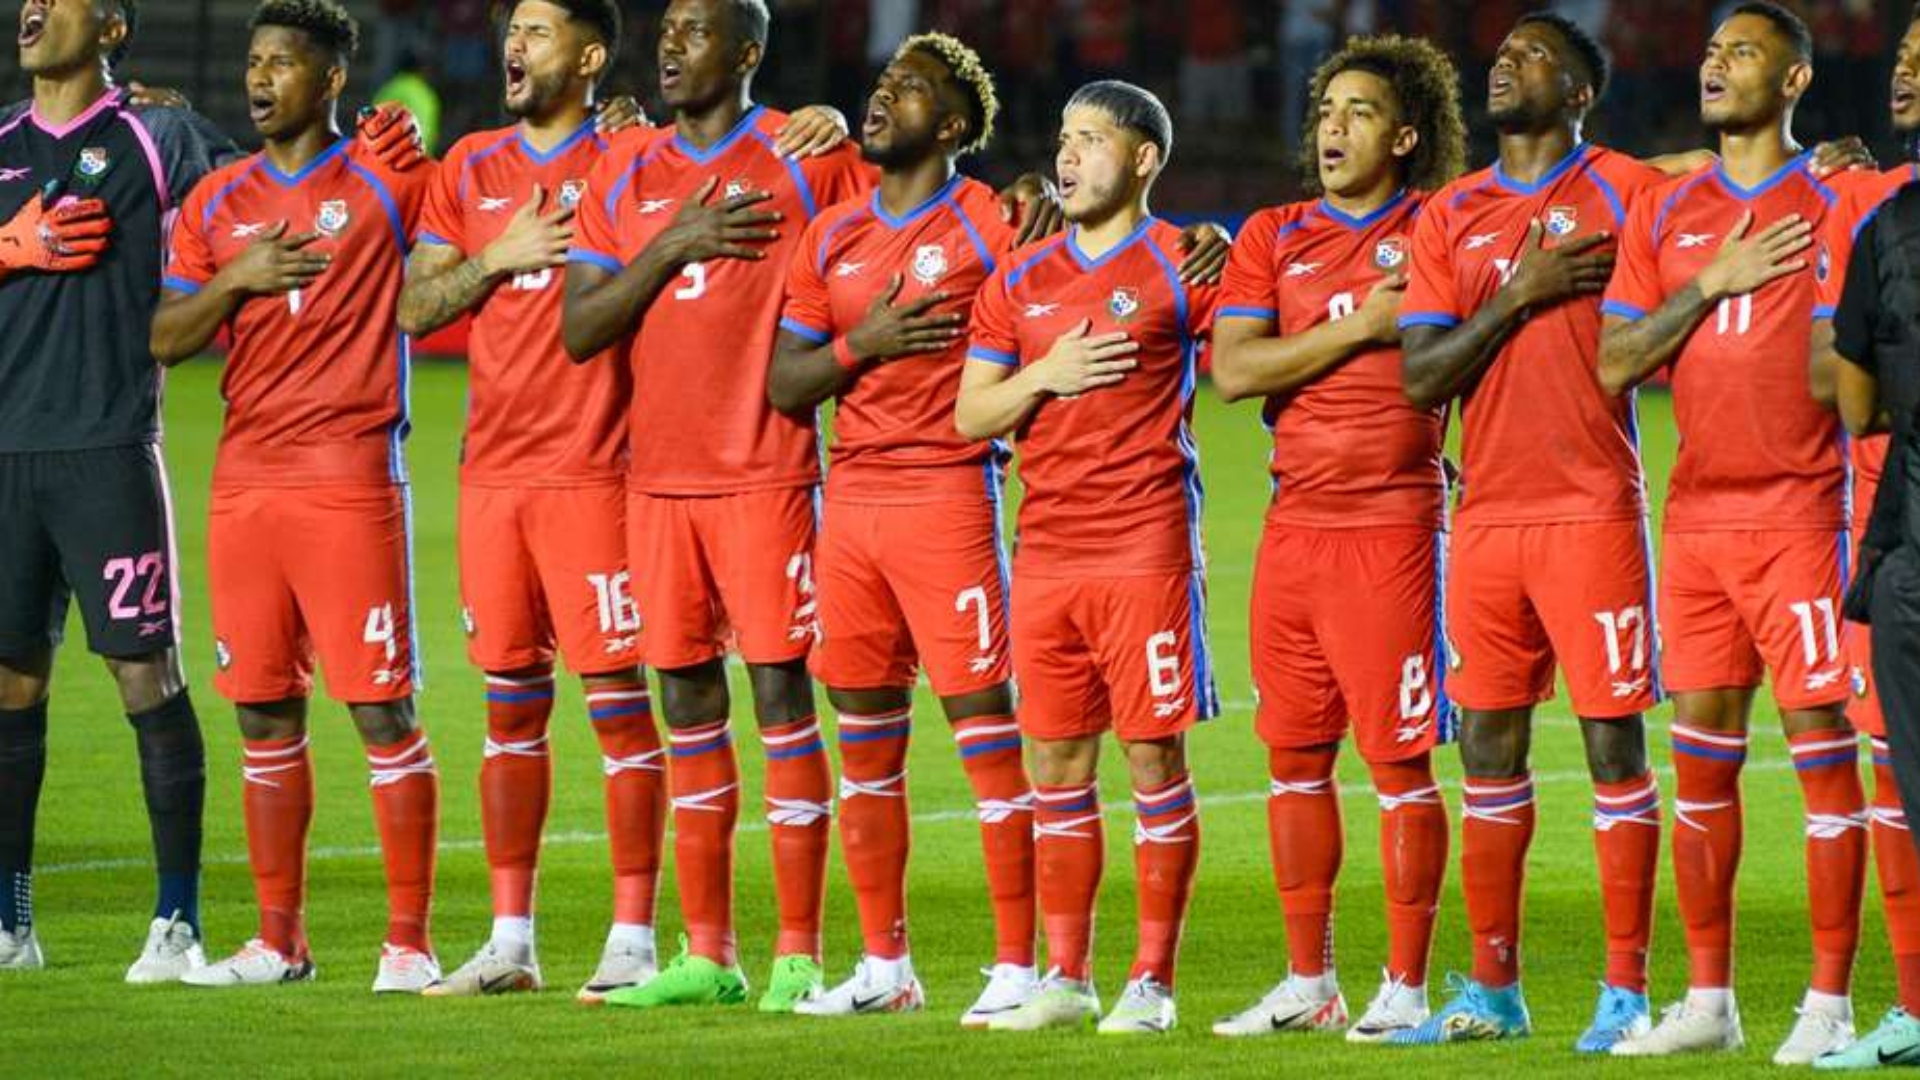 La selección de fútbol de Panamá jugará dos amistosos en España